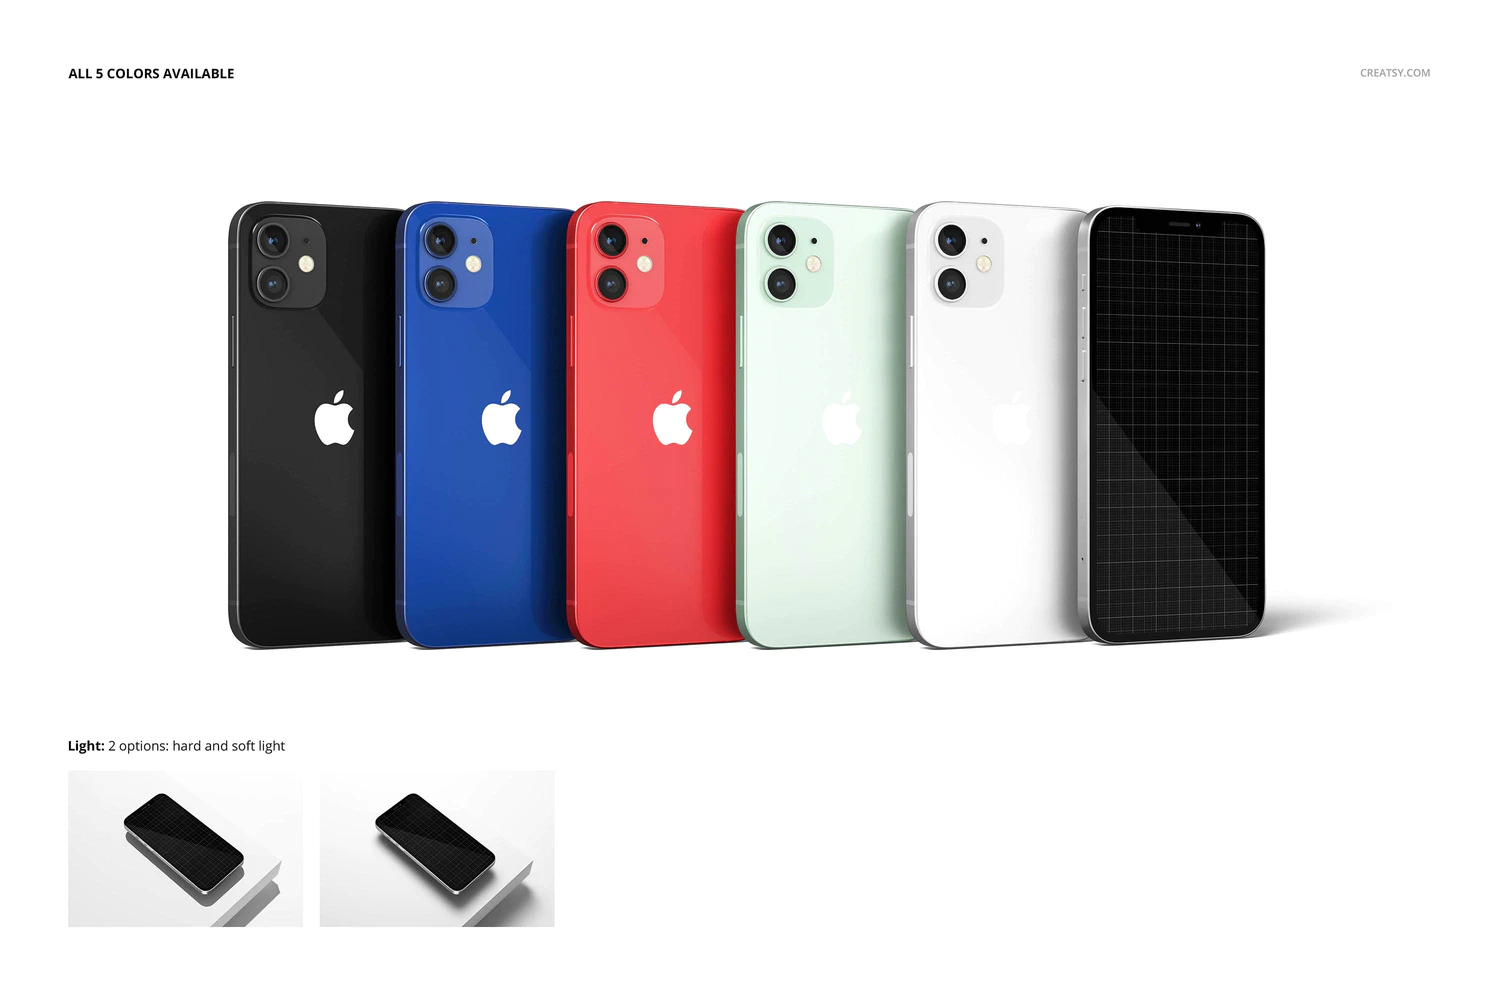 3377 苹果iPhone12金属哑光手机保护壳印花图案设计贴图ps样机素材模板 iPhone 12 Matte Snap Case 1 Mockup